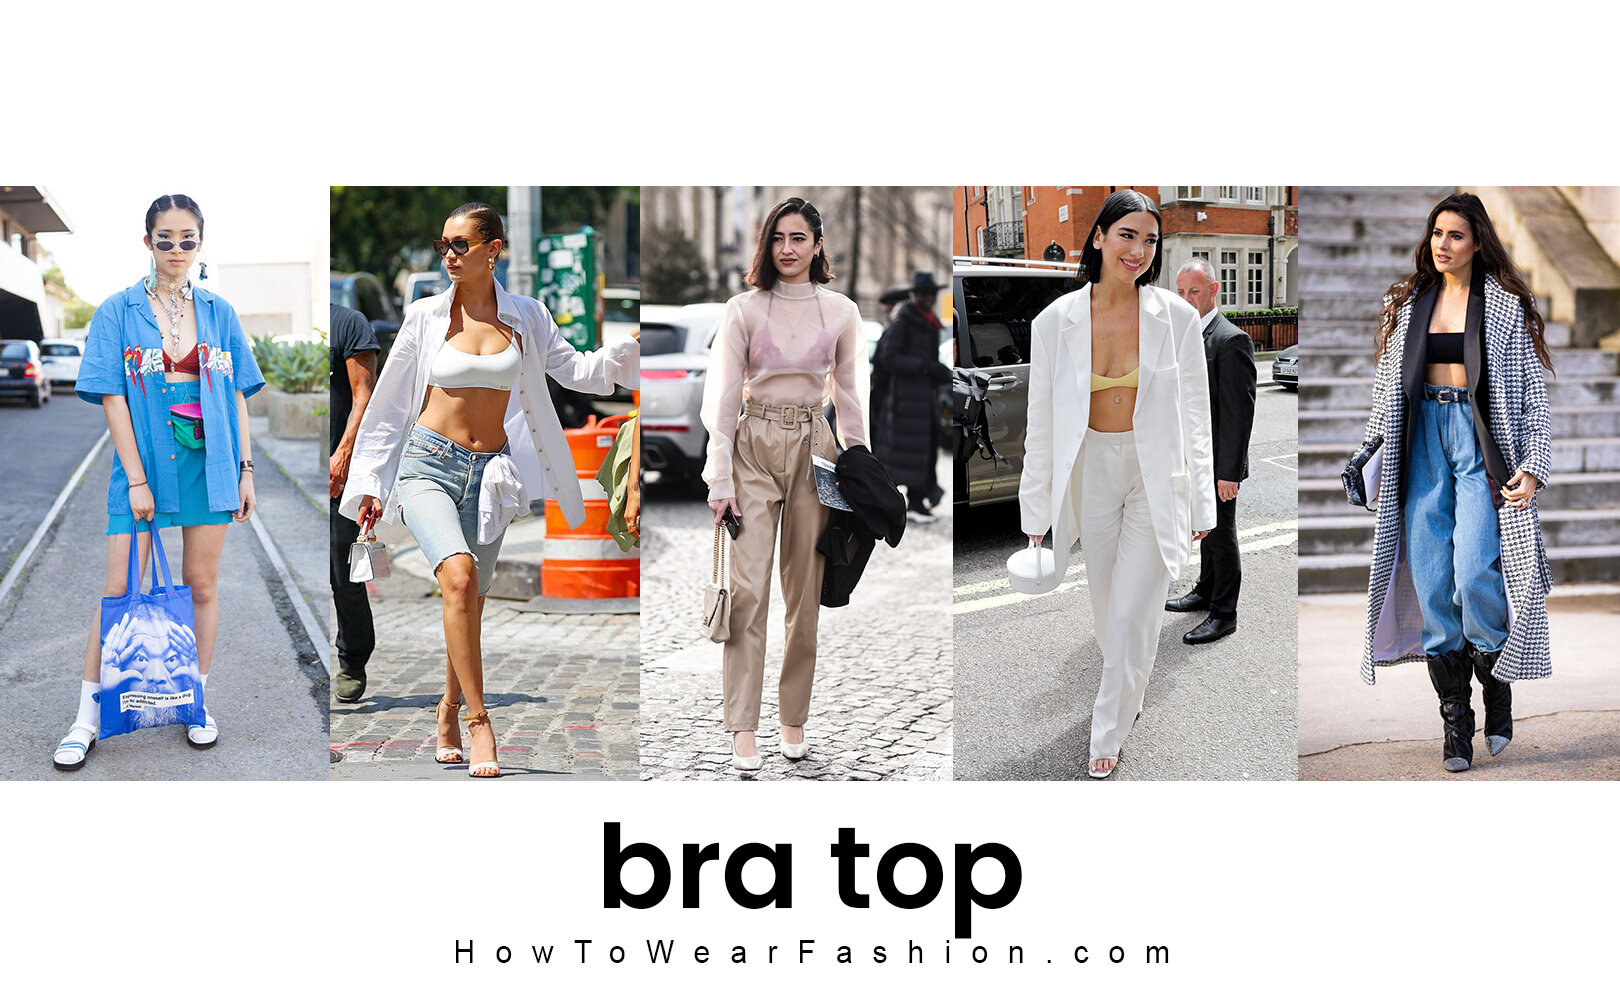 SPRING 2020: Bra + Blazer Chic Outfit